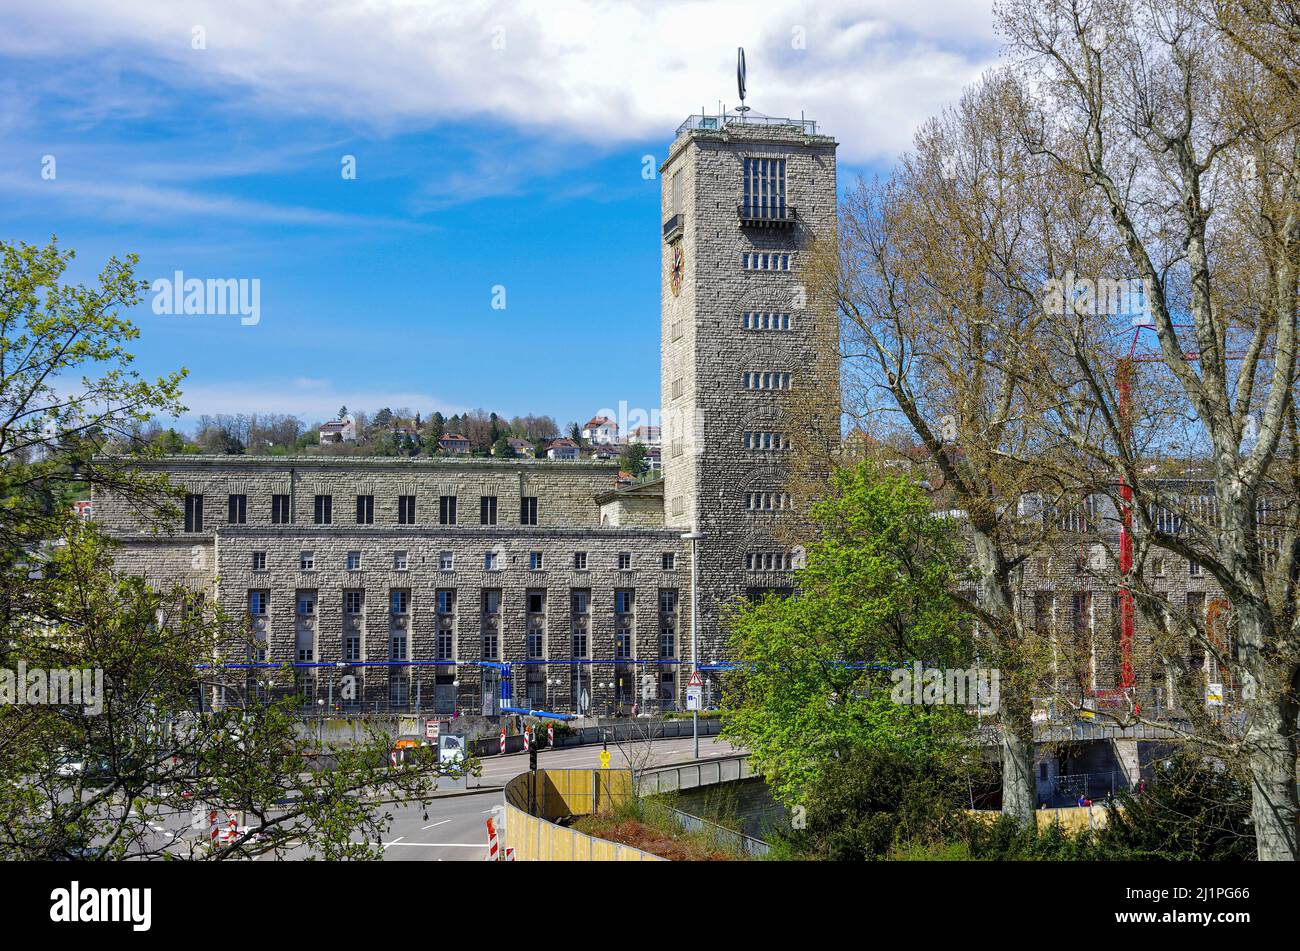 Stuttgart, Bade-Wurtemberg, Allemagne: Bâtiments comprenant la tour de la gare centrale de Stuttgart, 10 avril 2012. Banque D'Images